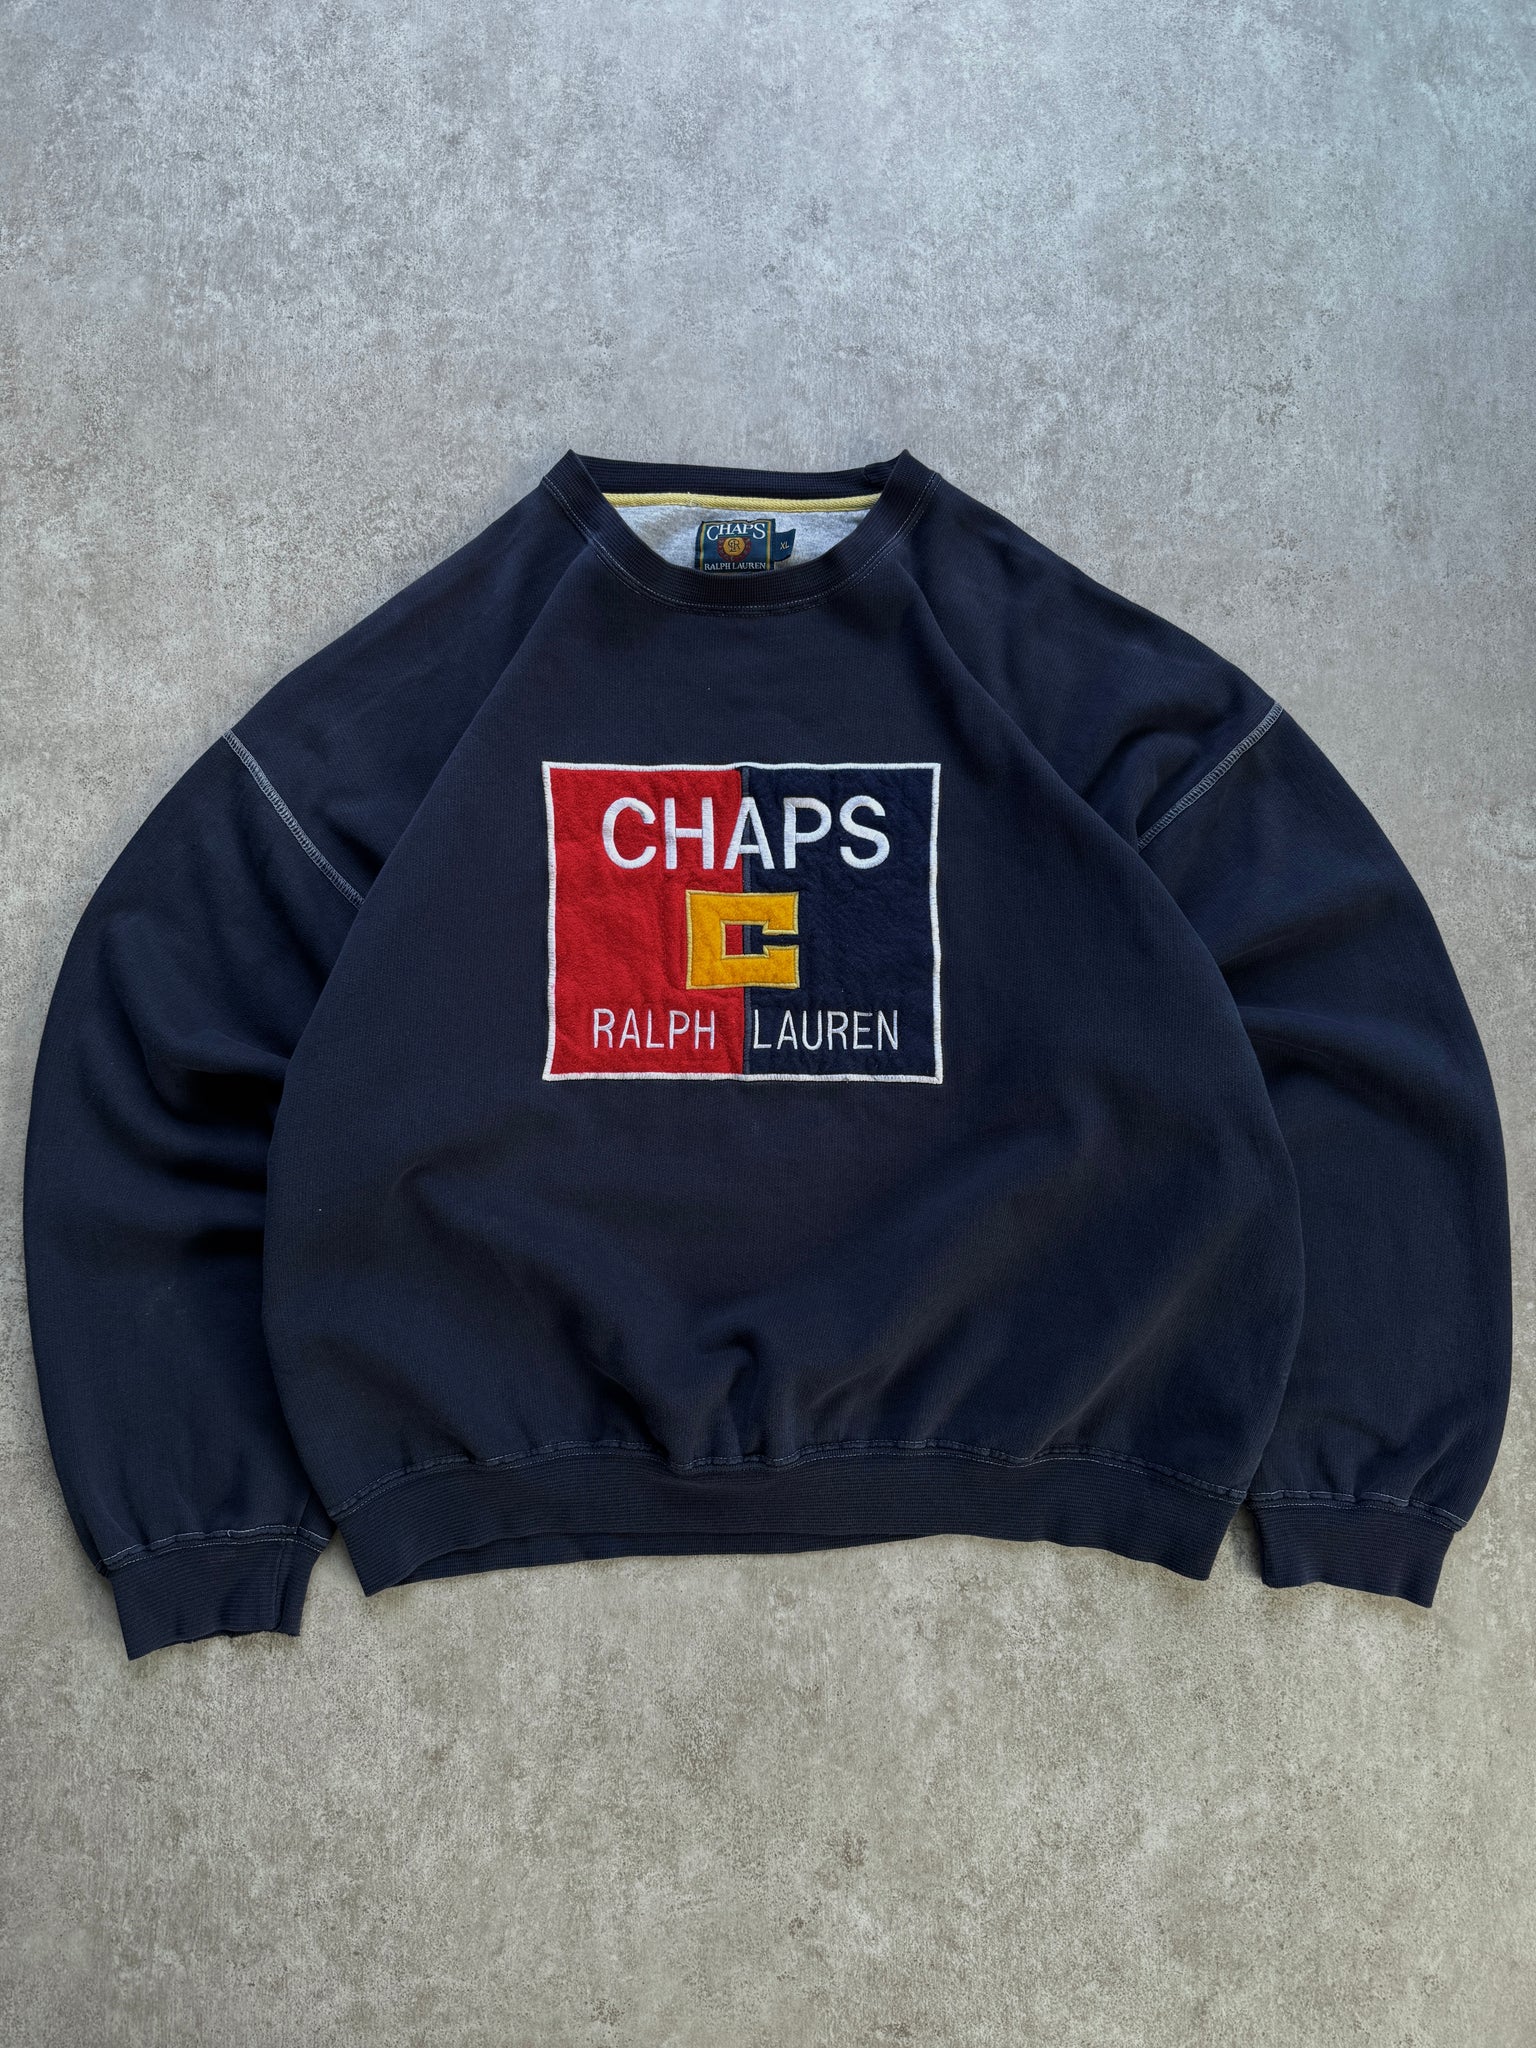 Vintage Chaps Ralph Lauren Sweatshirt (XL)